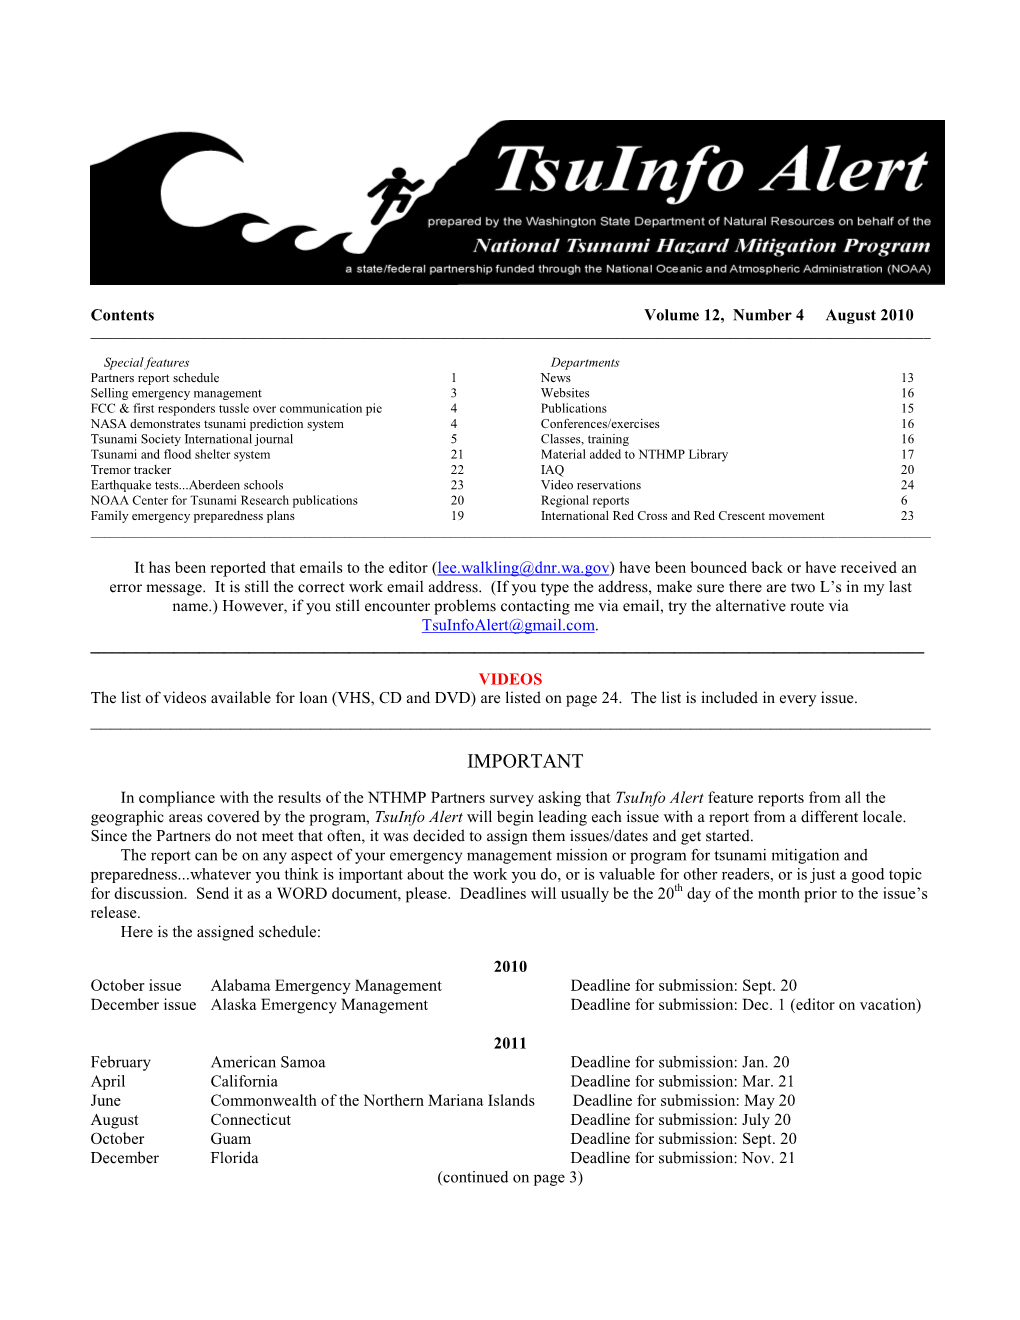 Tsuinfo Alert, V. 12, No. 4, August 2010 2